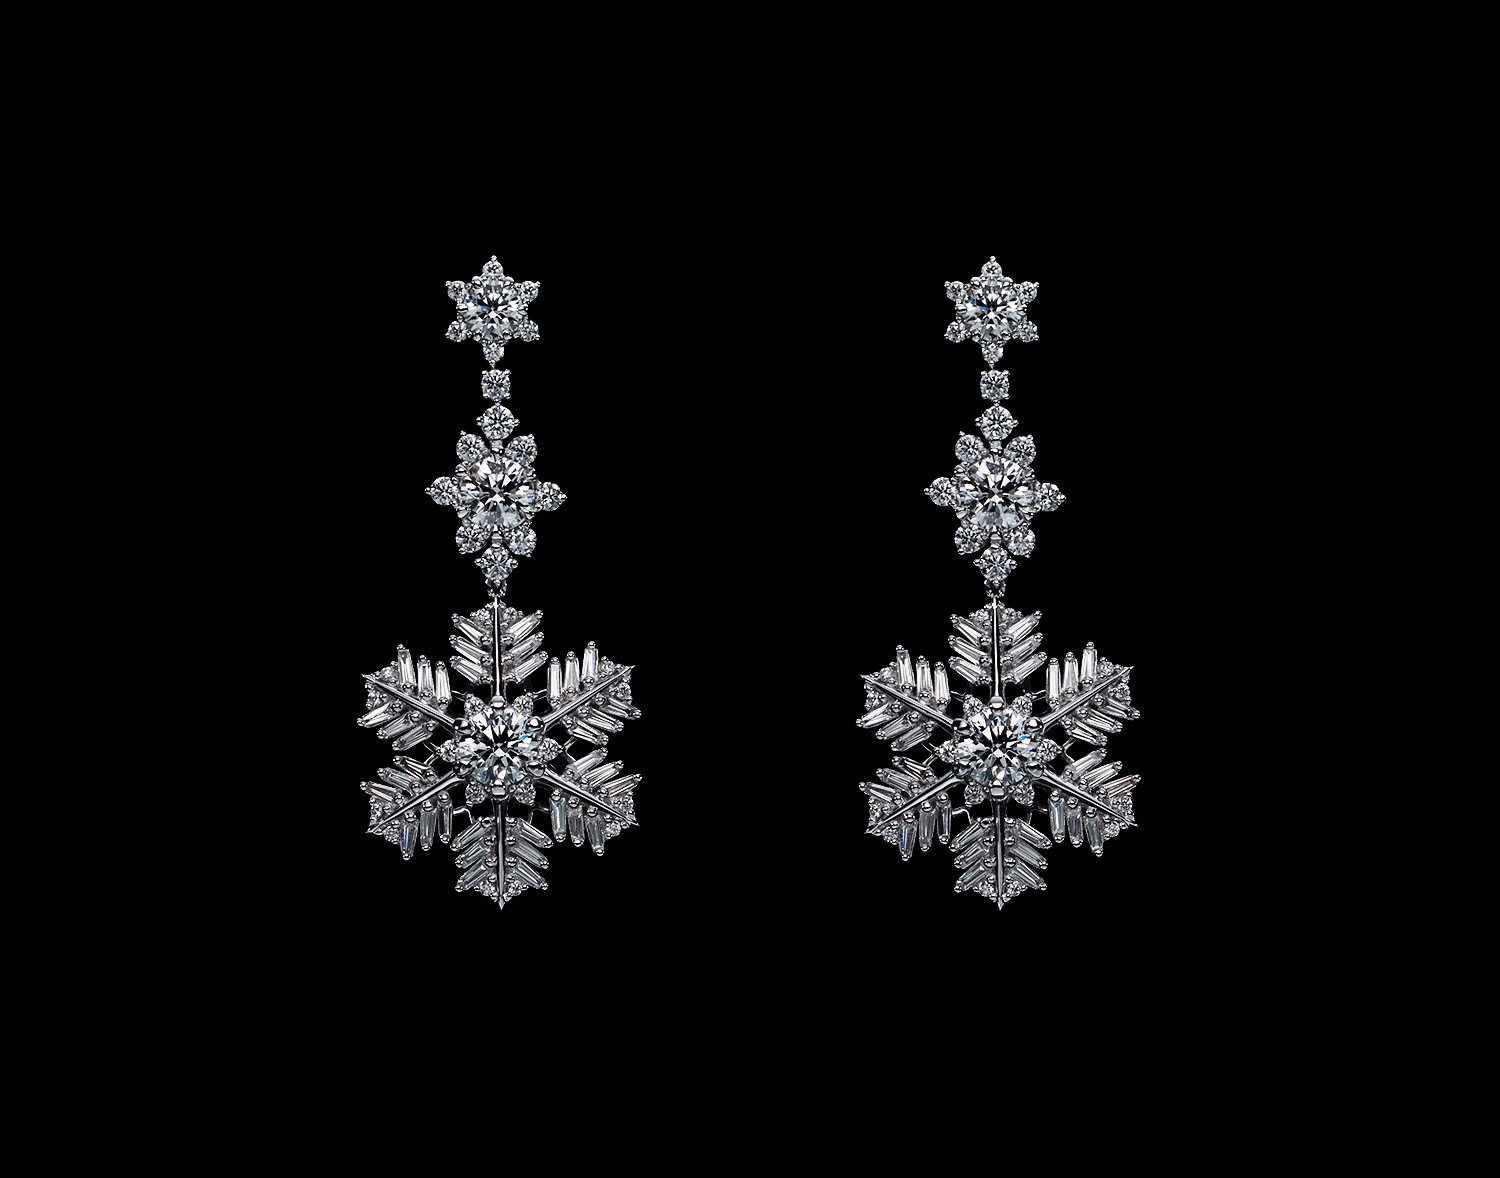 国際宝飾窃盗団ピンクパンサーに強奪されたダイヤモンドコレクション シューペルブ を復刻 時価総額は12億円